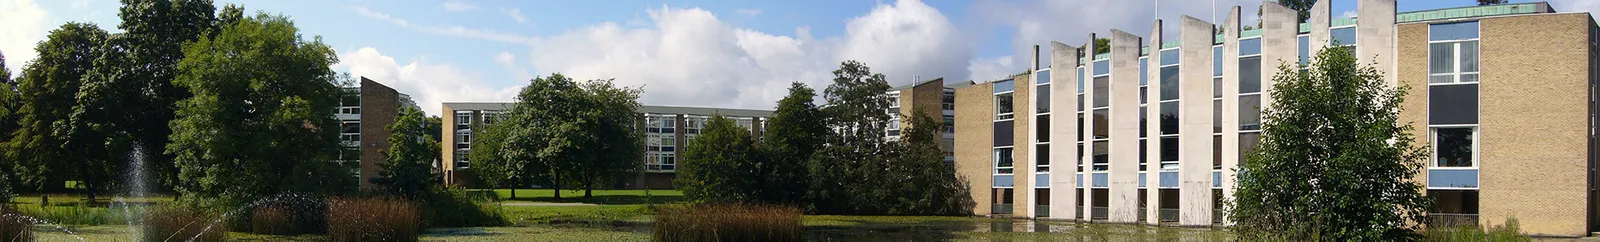 The Van Mildert College Grounds